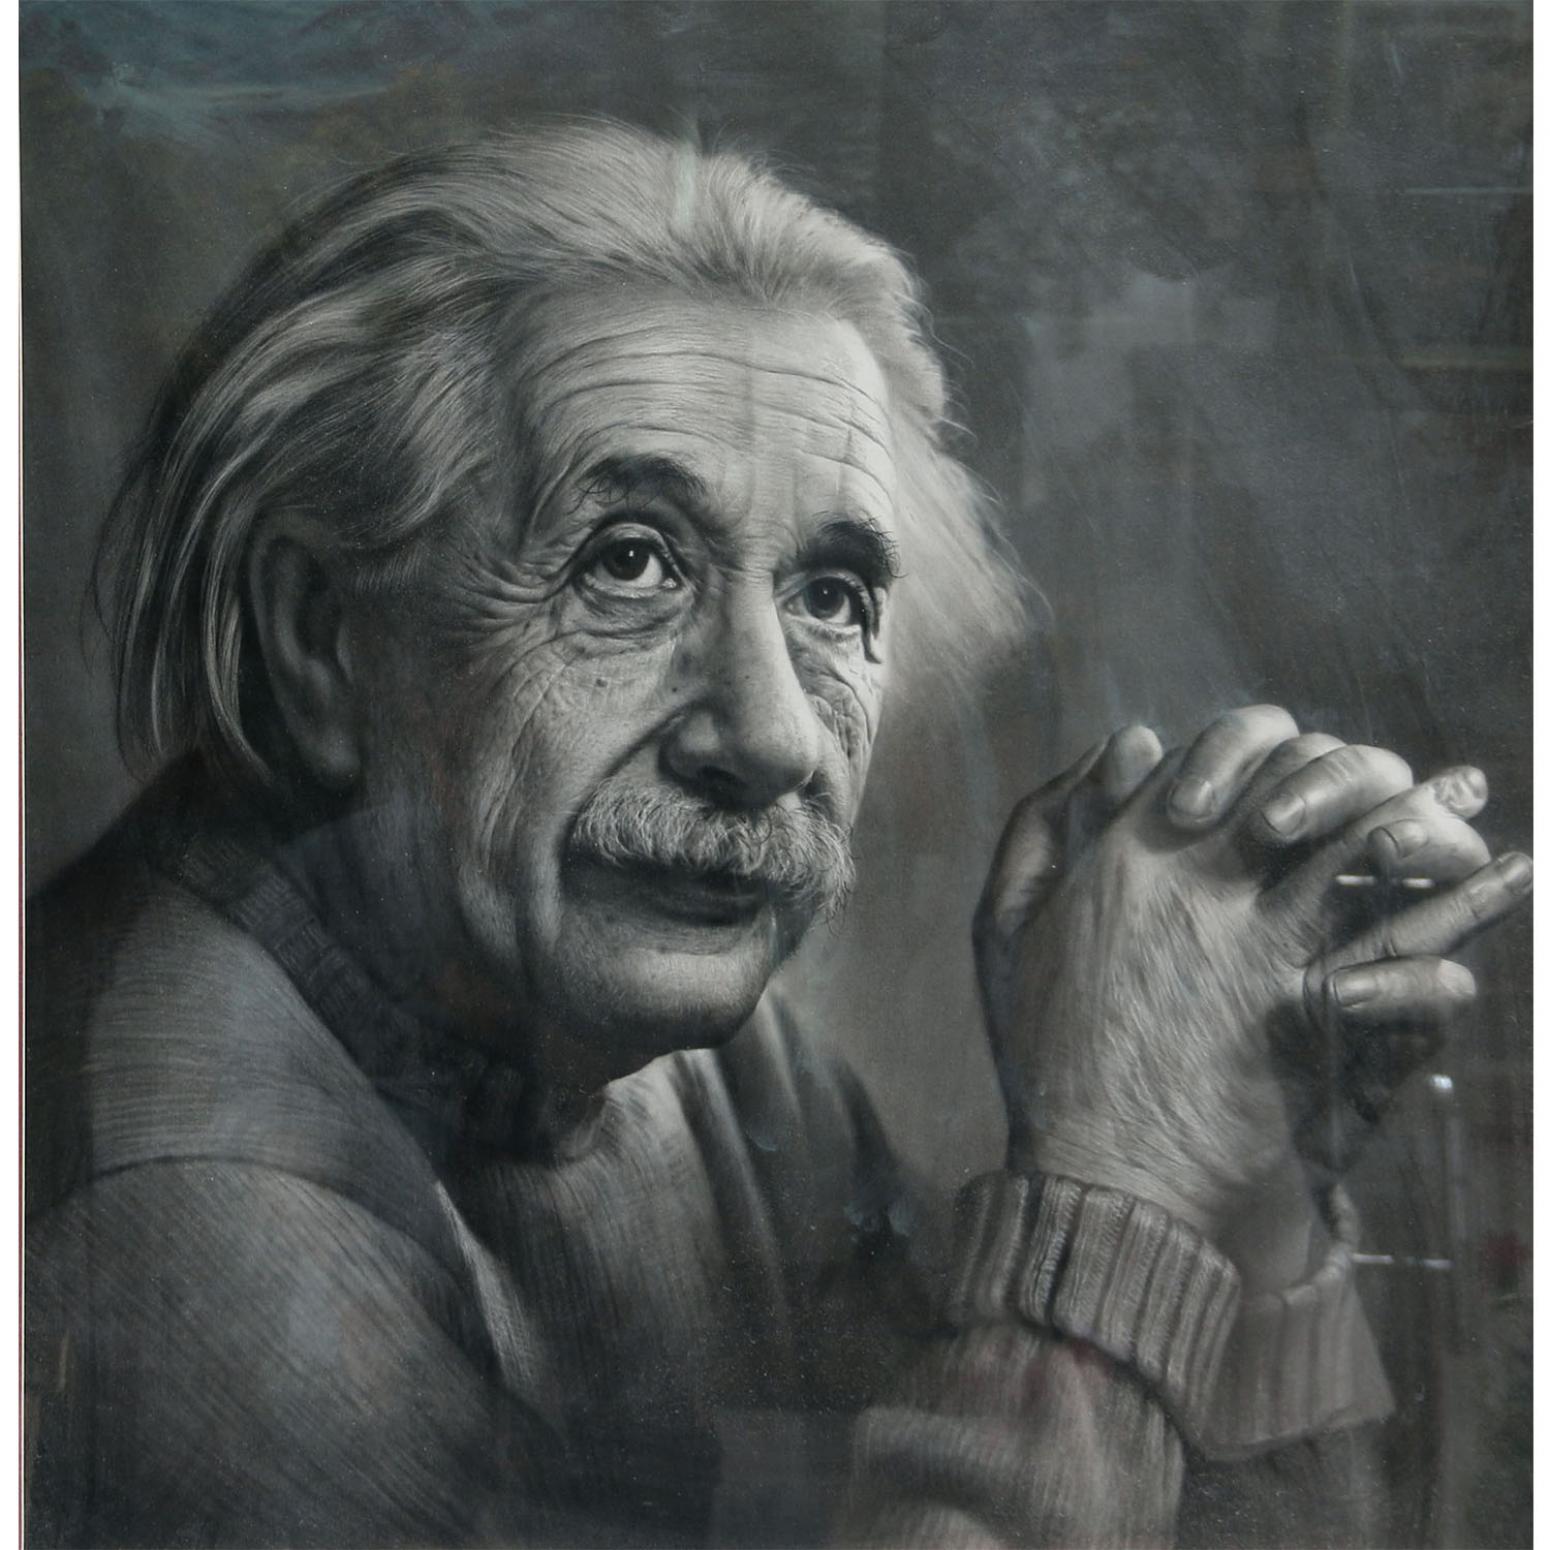 Albert Einstein 4K Wallpapers - Top Free Albert Einstein 4K Backgrounds ...